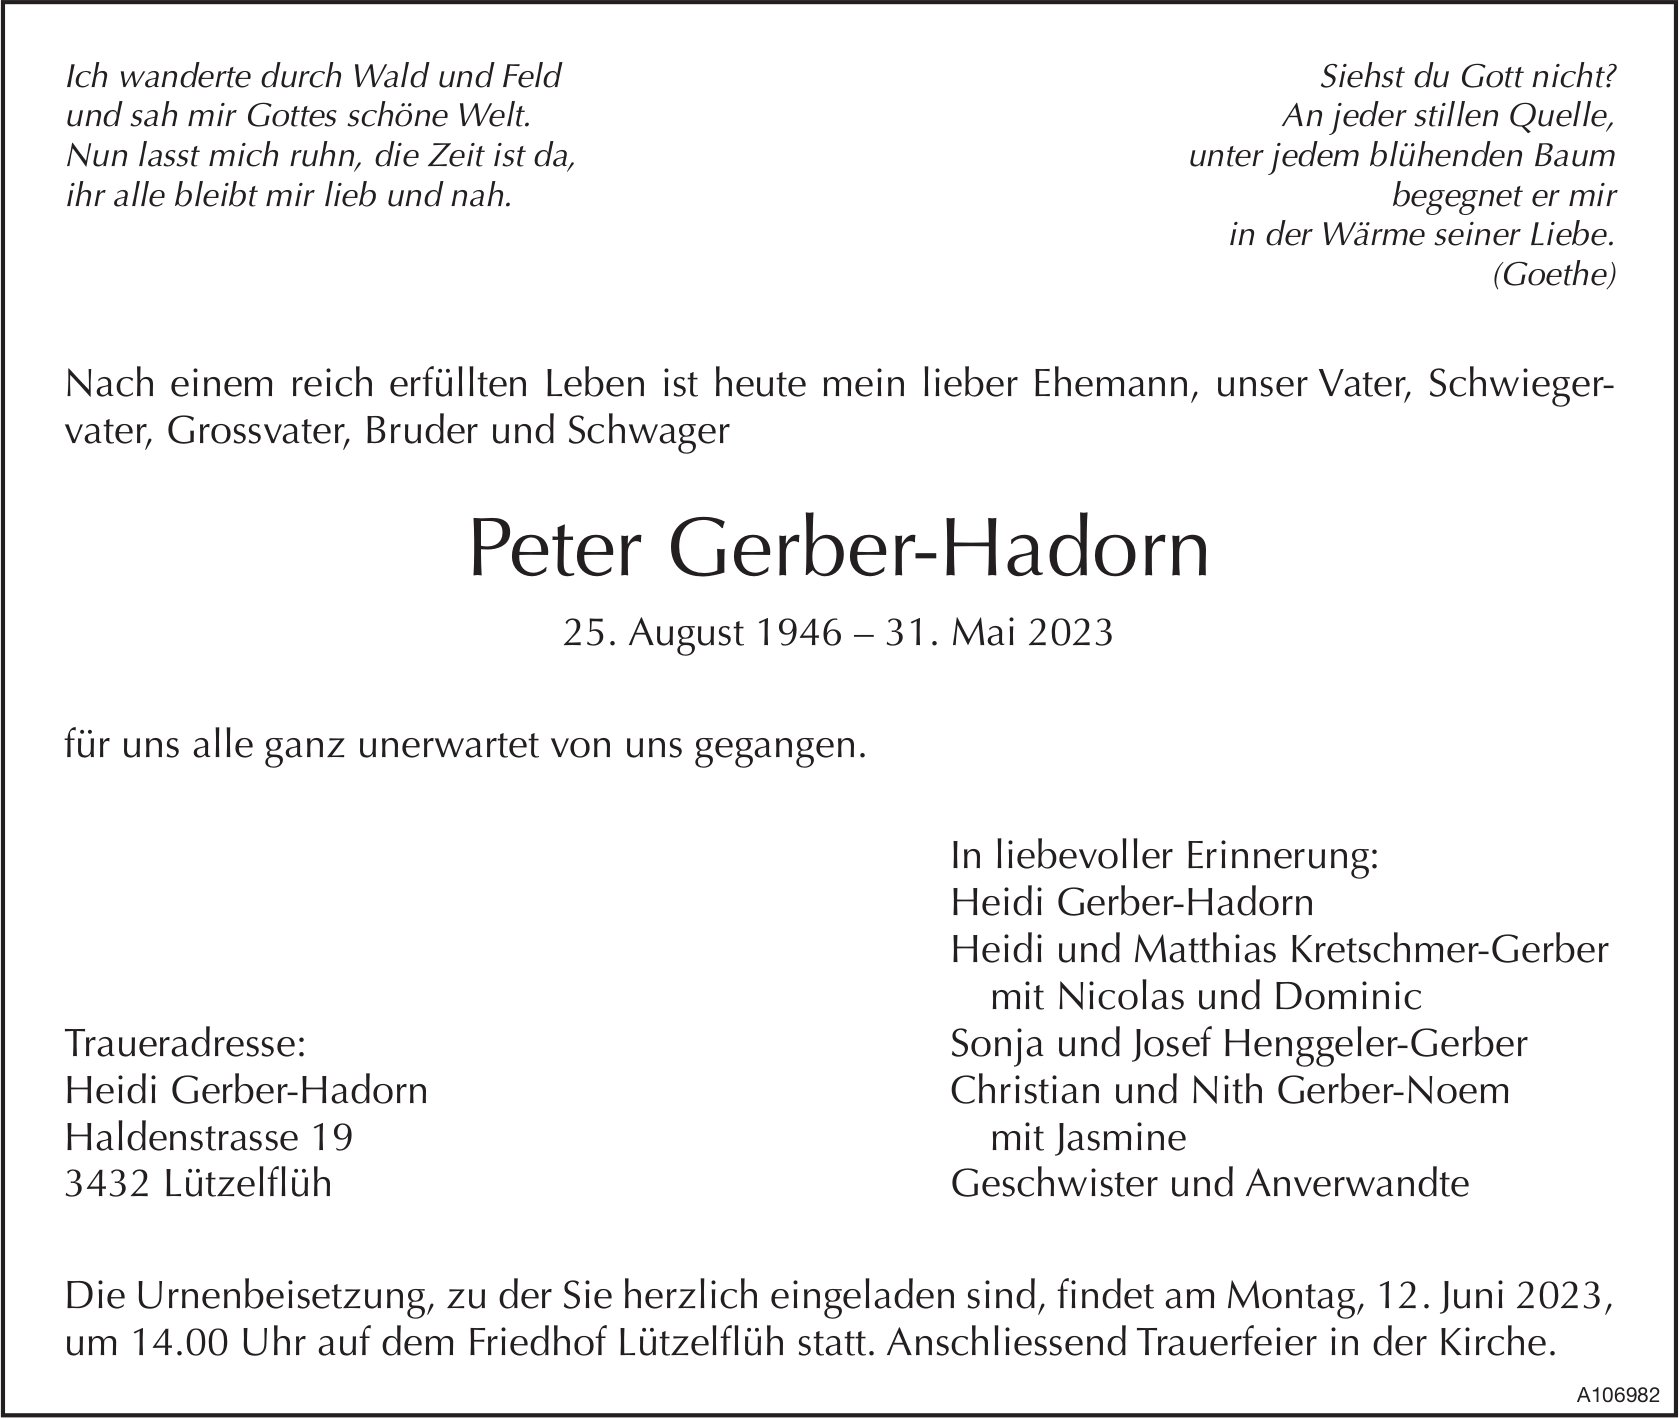 Peter Gerber-Hadorn, Mai 2023 / TA